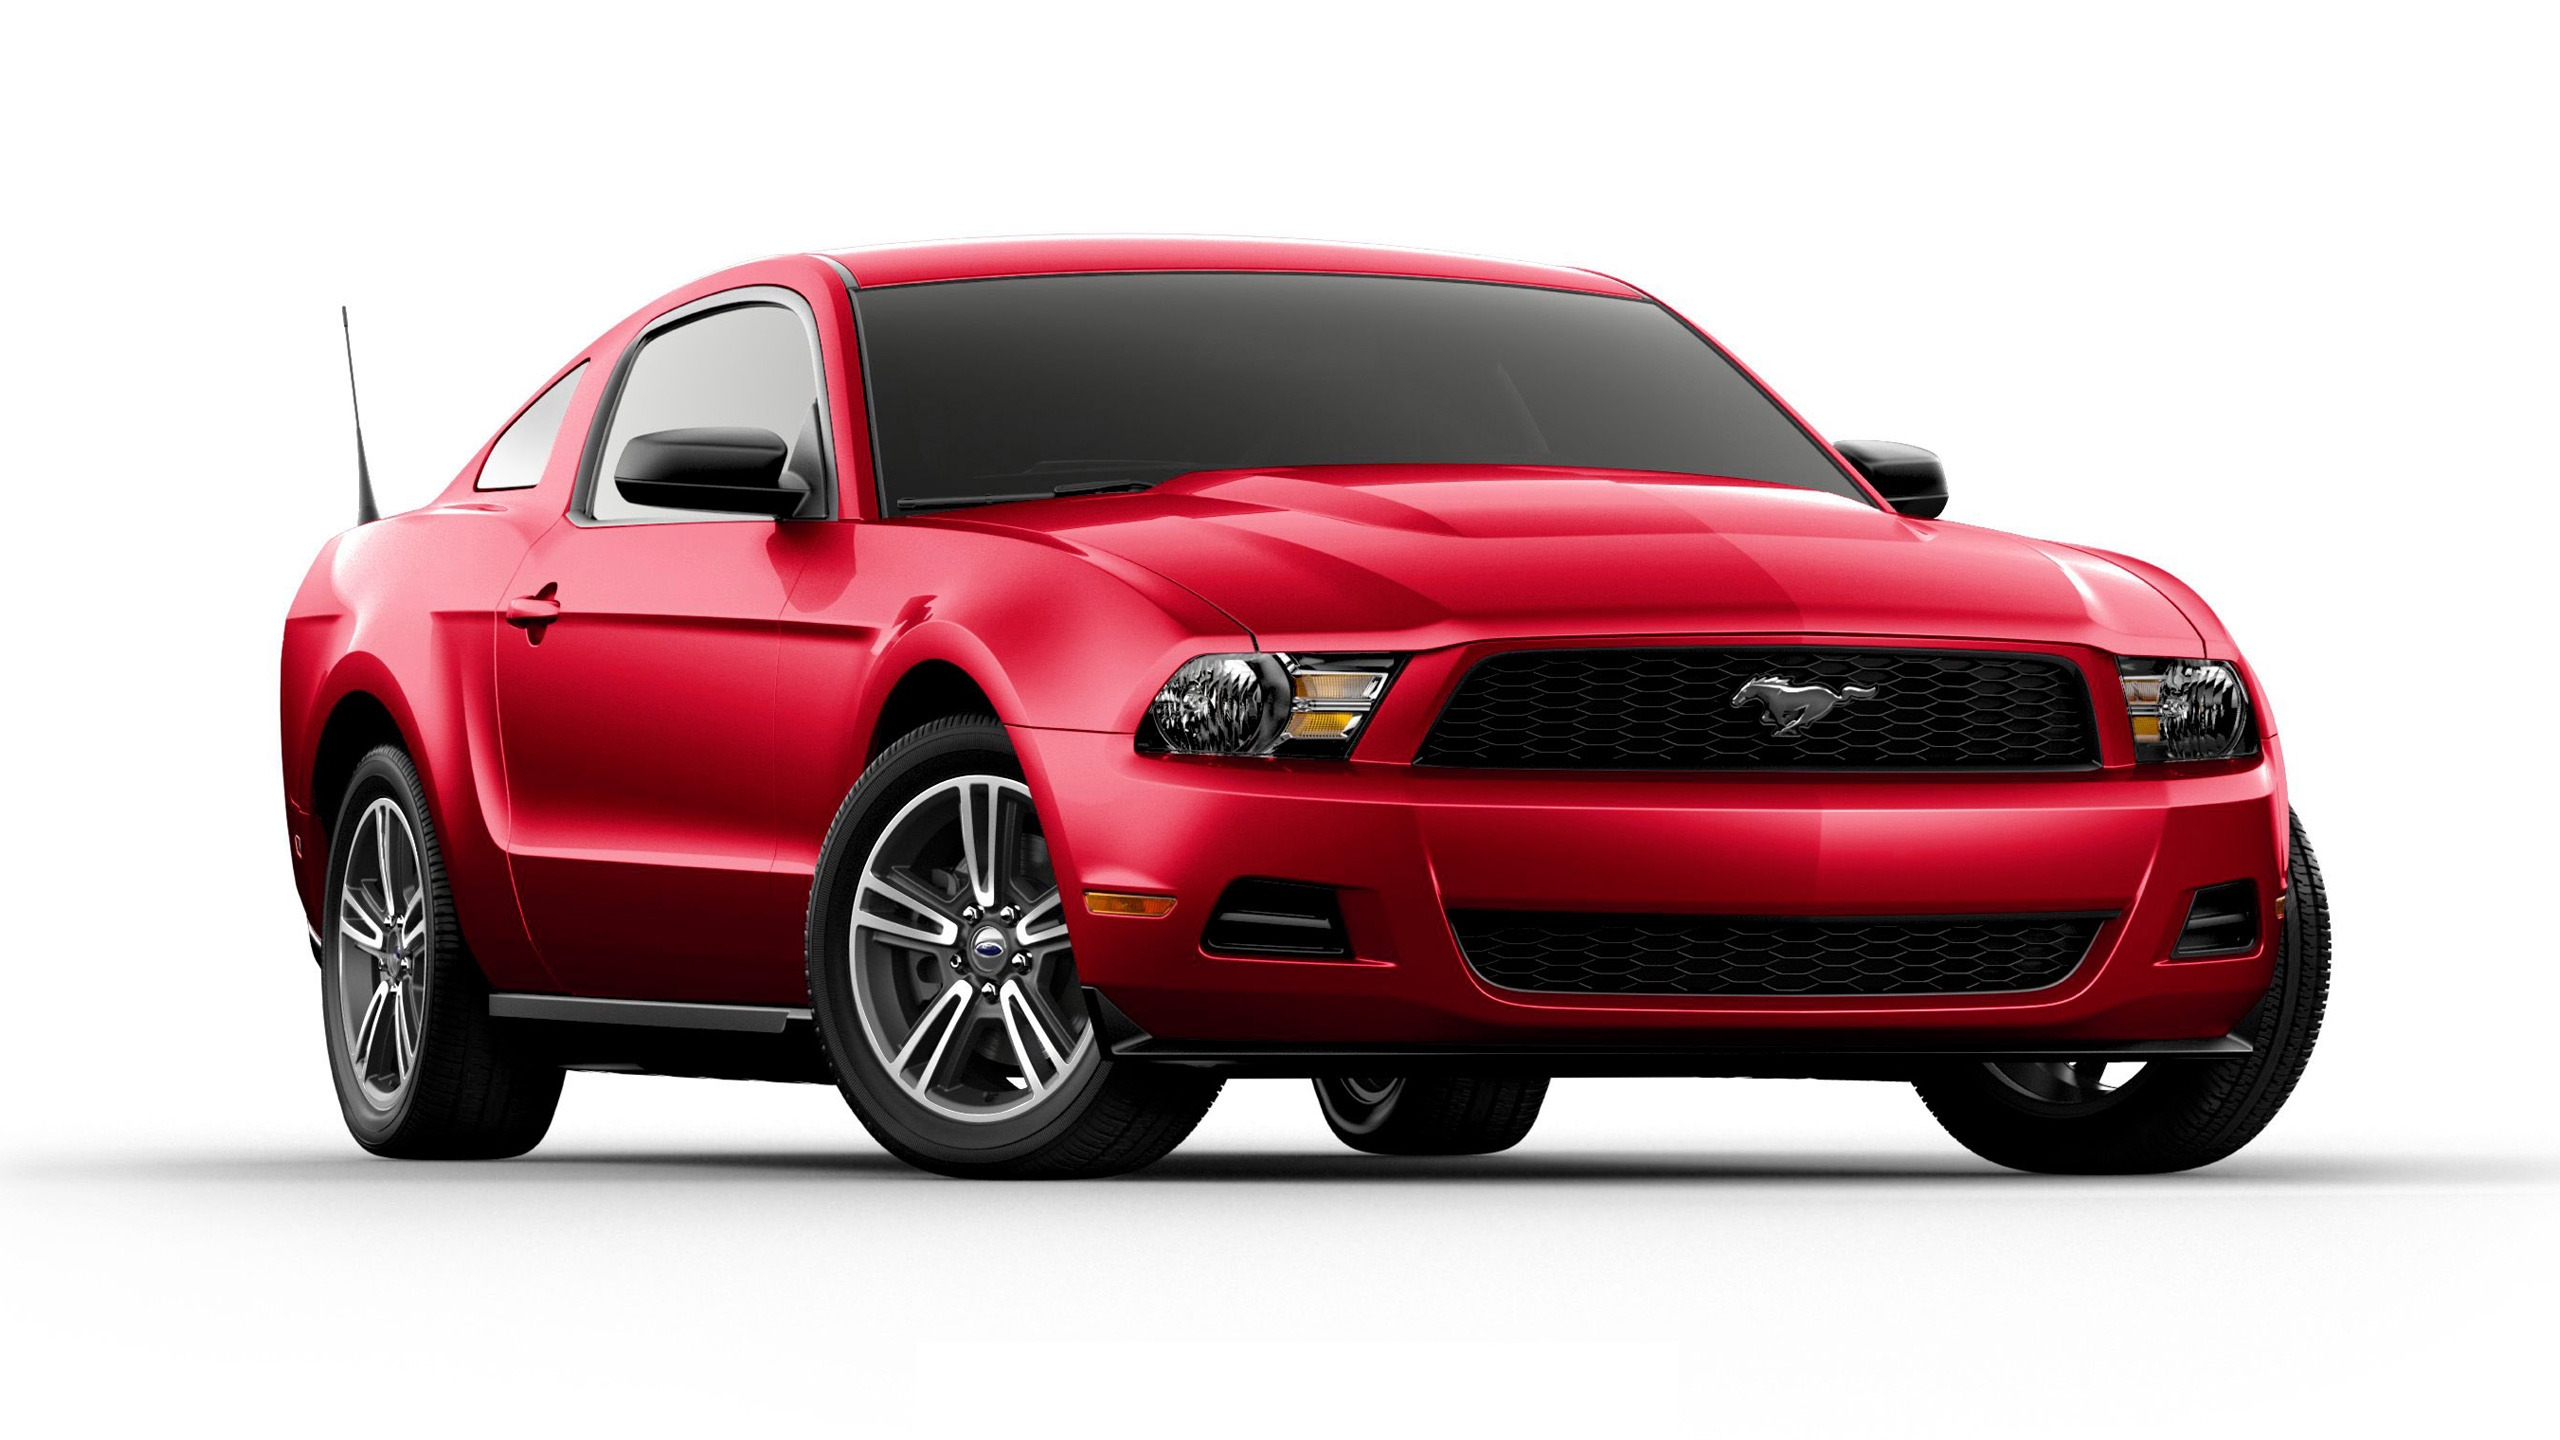 Ford Mustang V6 for 2560x1440 HDTV resolution